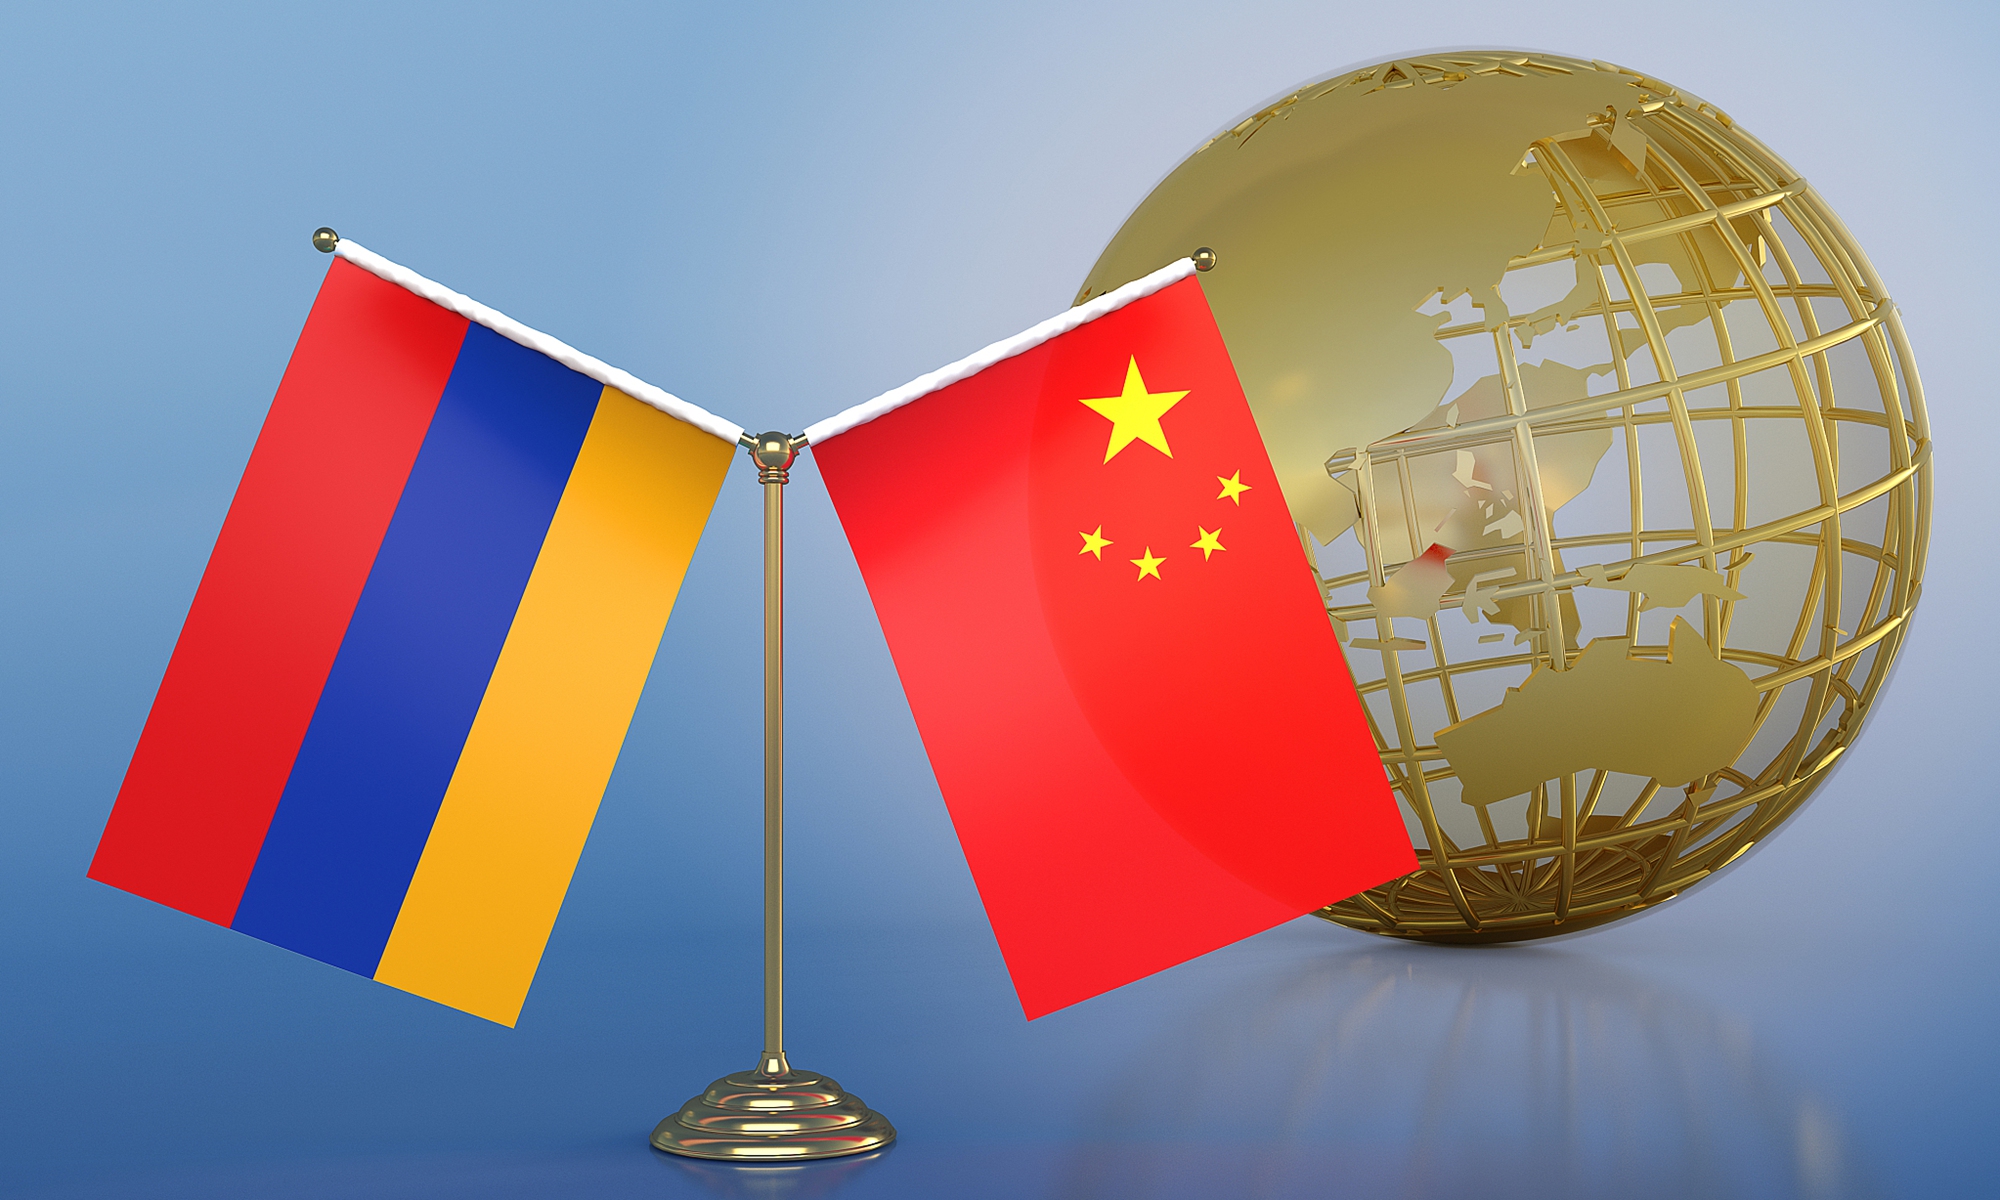 China and Armenia